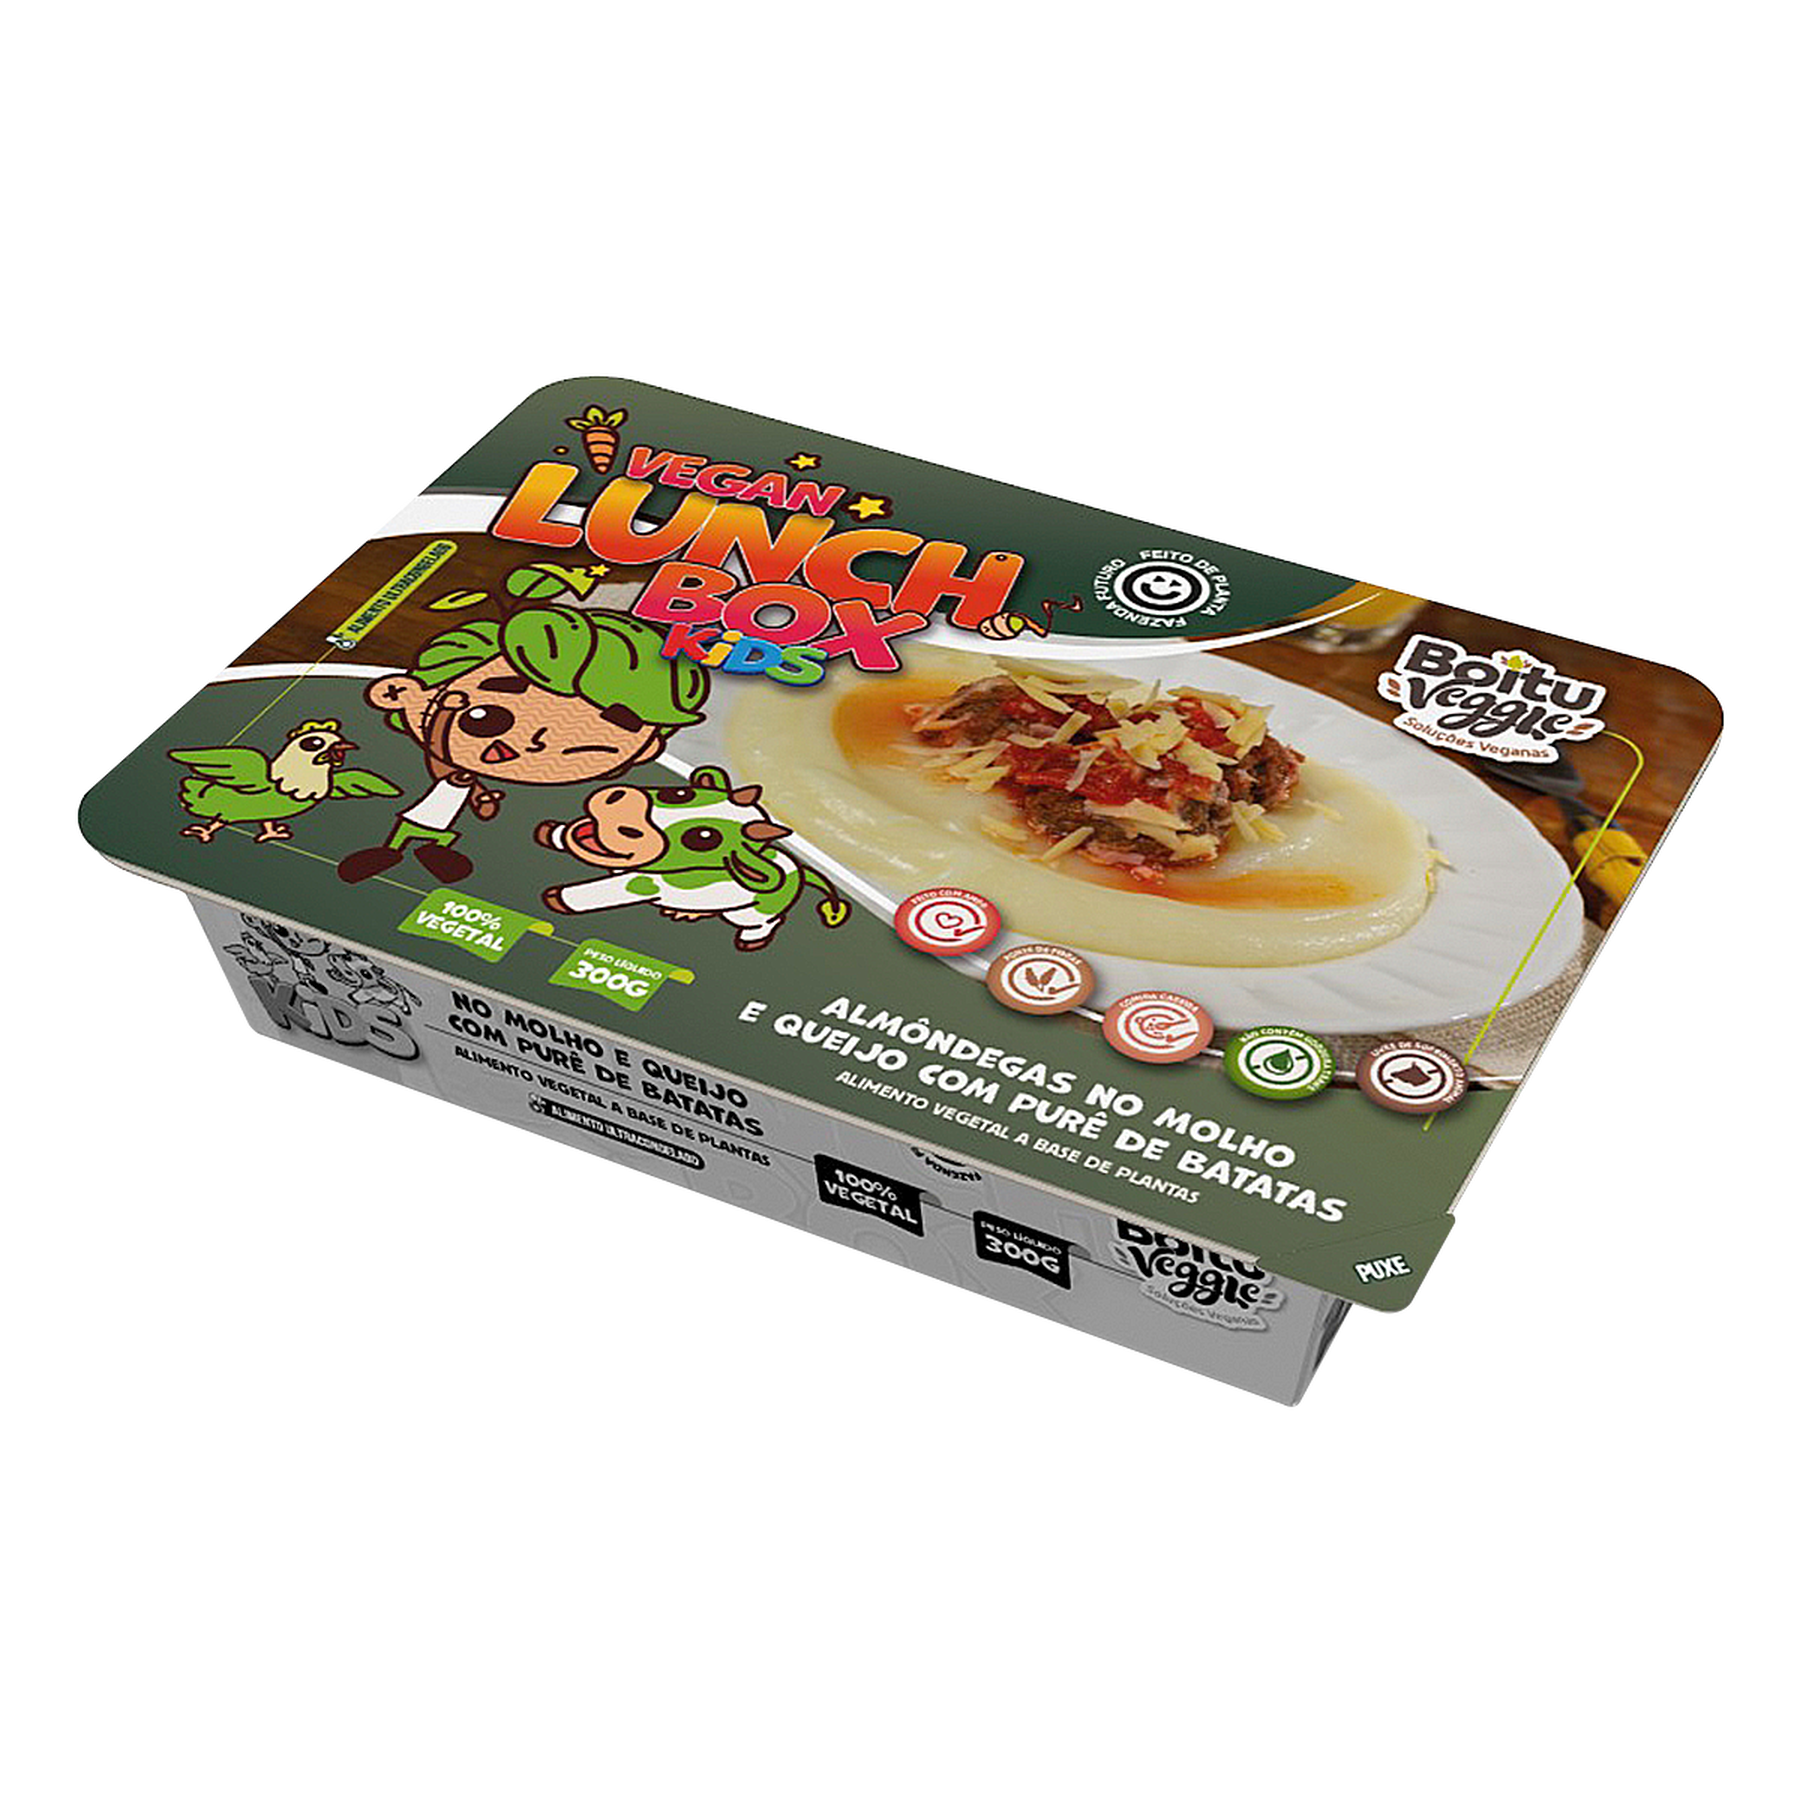 Almôndegas no Molho e Queijo com Purê de Batatas Vegan Lunch Box Kids Boitu Veggie Caixa 300g